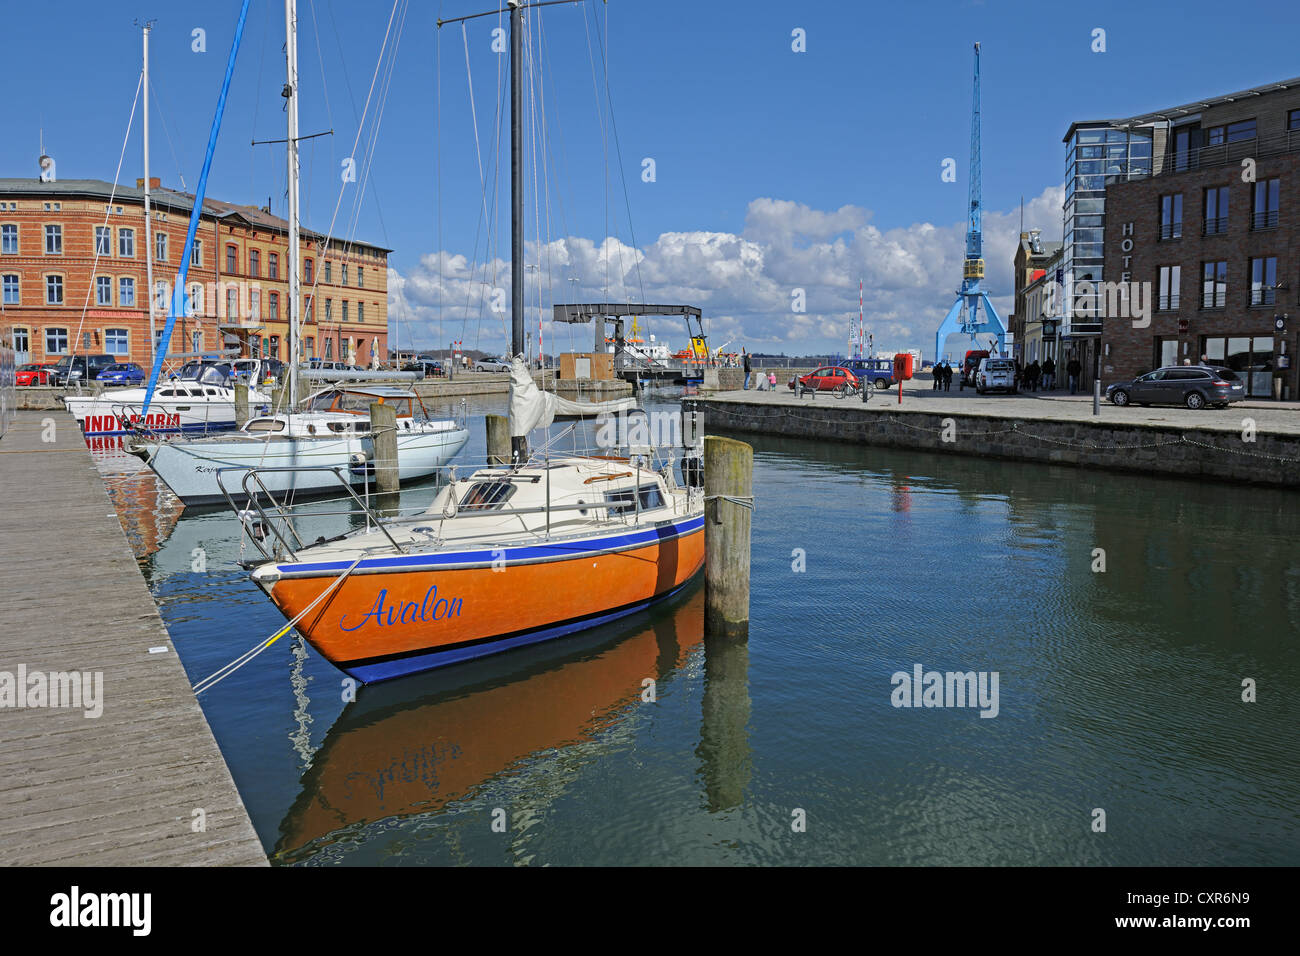 Sportboote, Segelboote in Querkanal, ein Kanal im historischen Hafen von Stralsund, Mecklenburg-Vorpommern Stockfoto